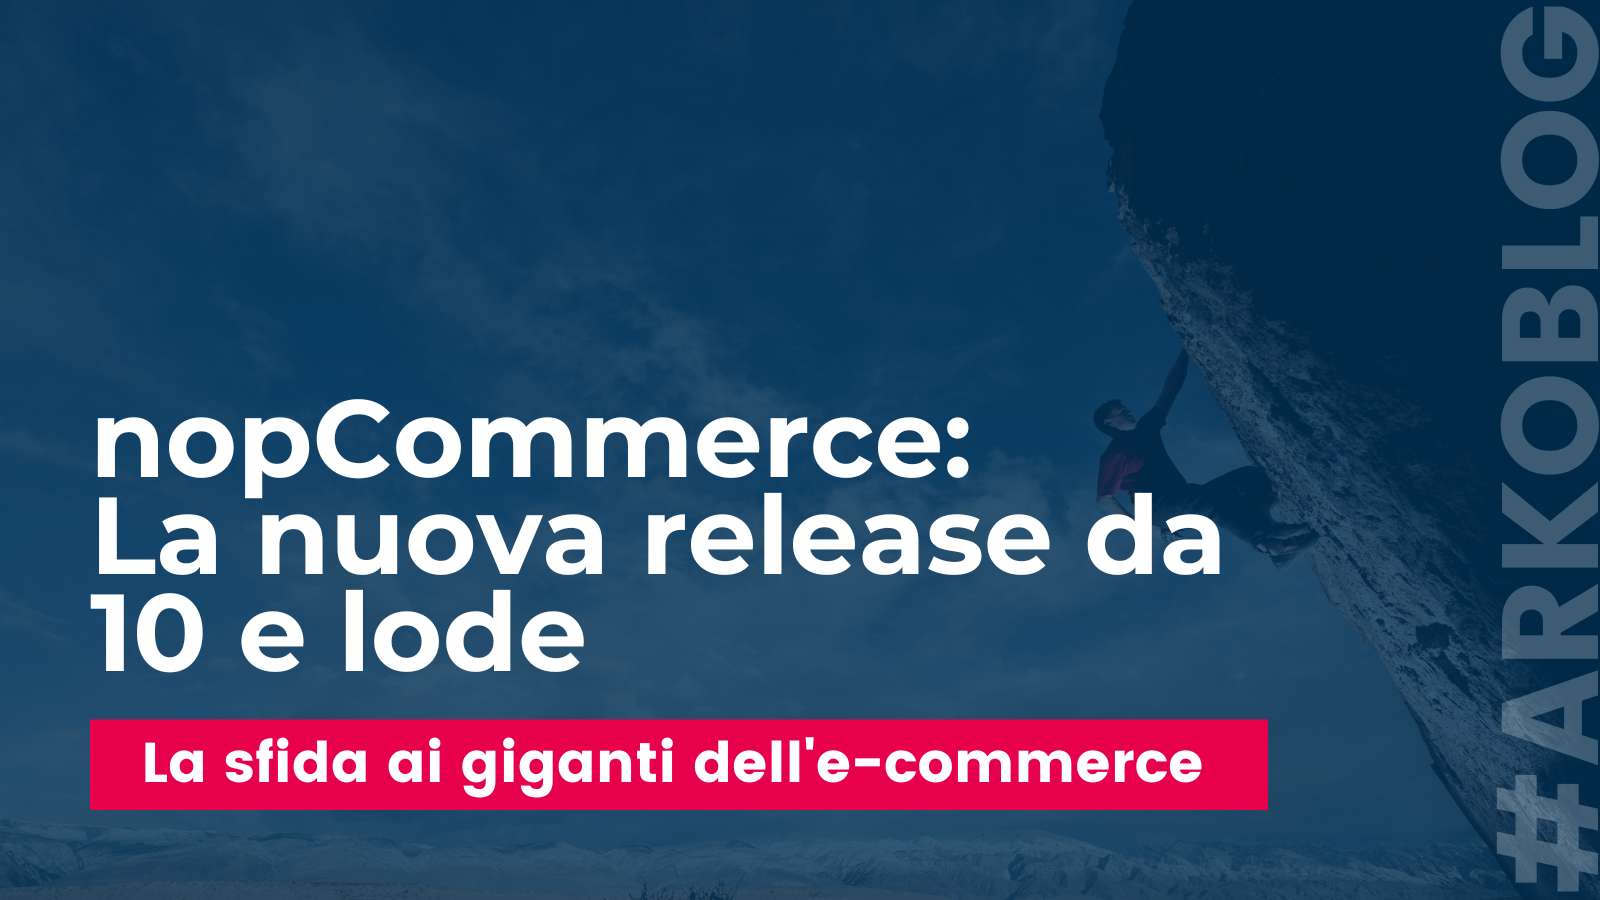 nopCommerce: La nuova release che sfida i giganti dell'e-commerce